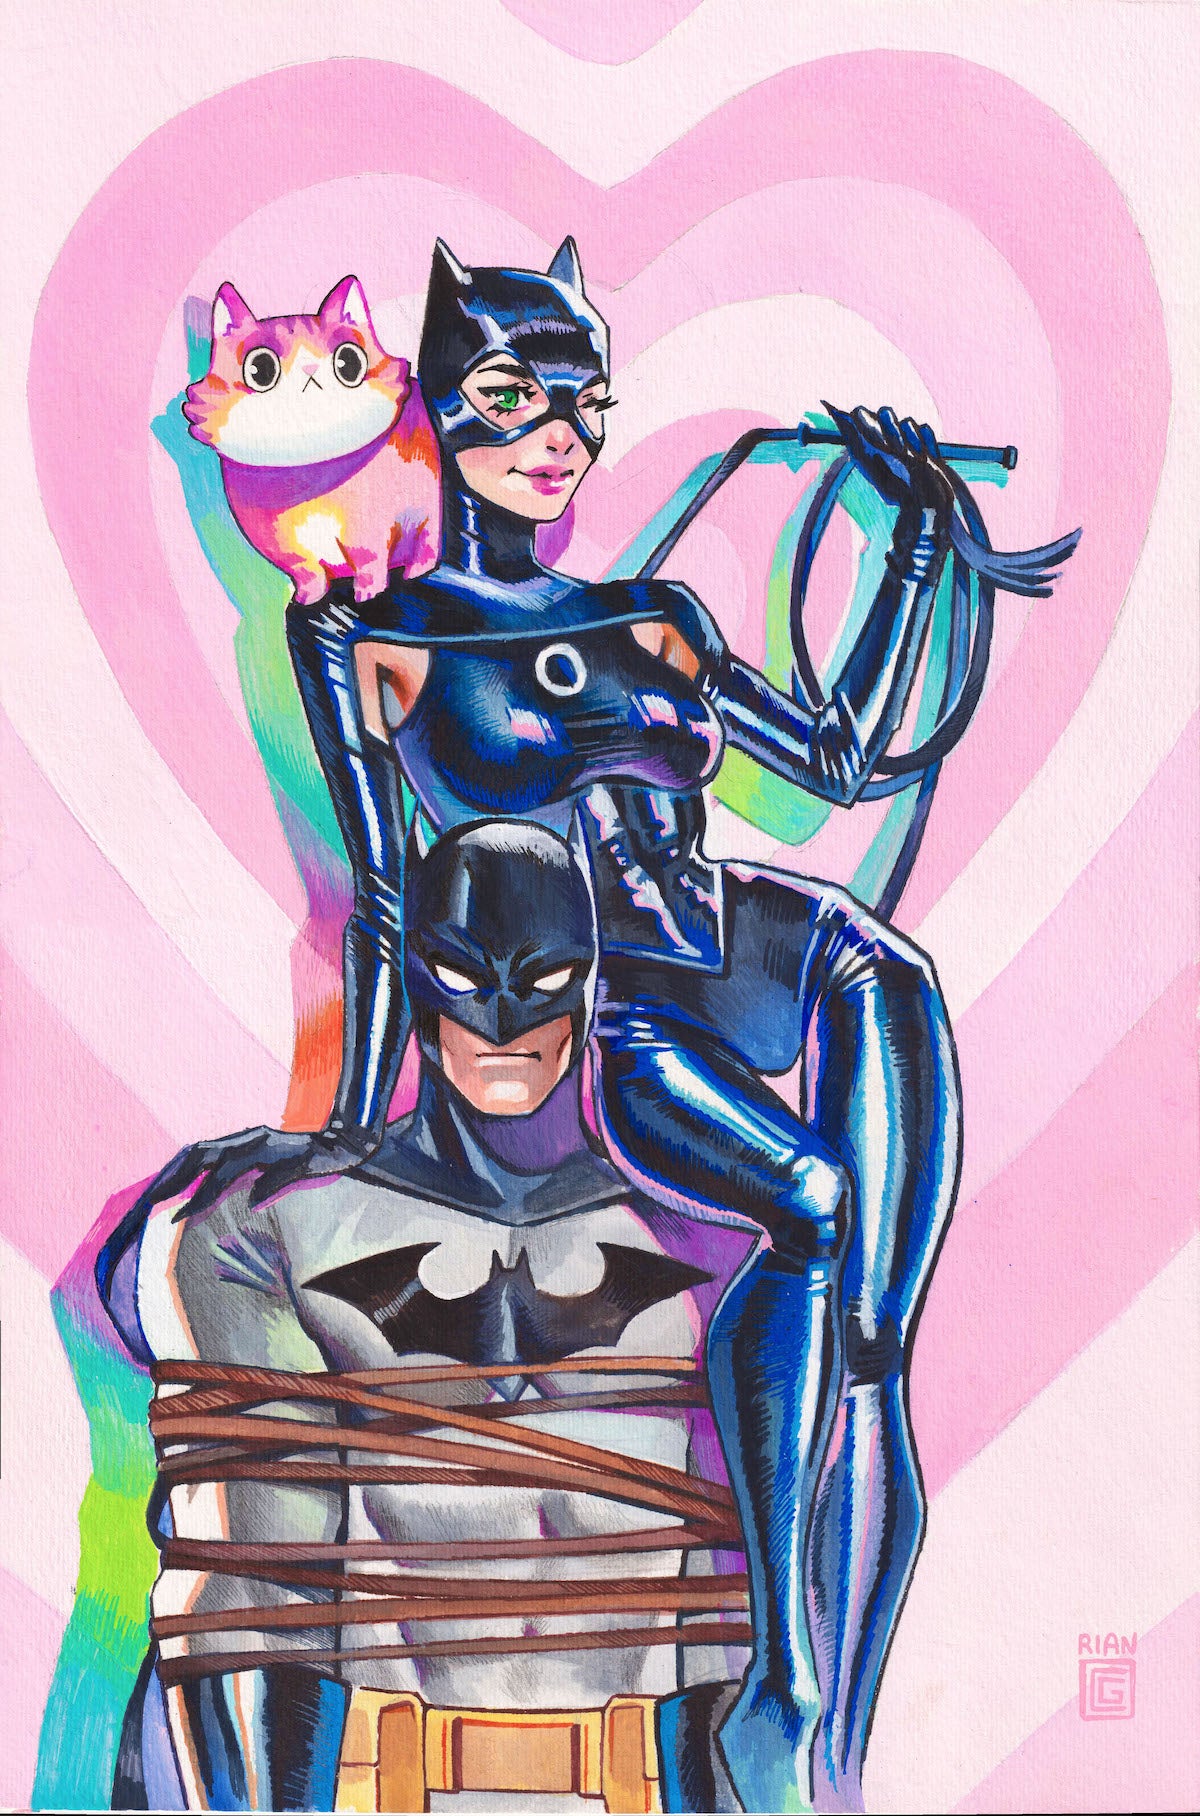 New York Comic Con  Batman  Catwoman Sketch by Joe Stanton  Facebook